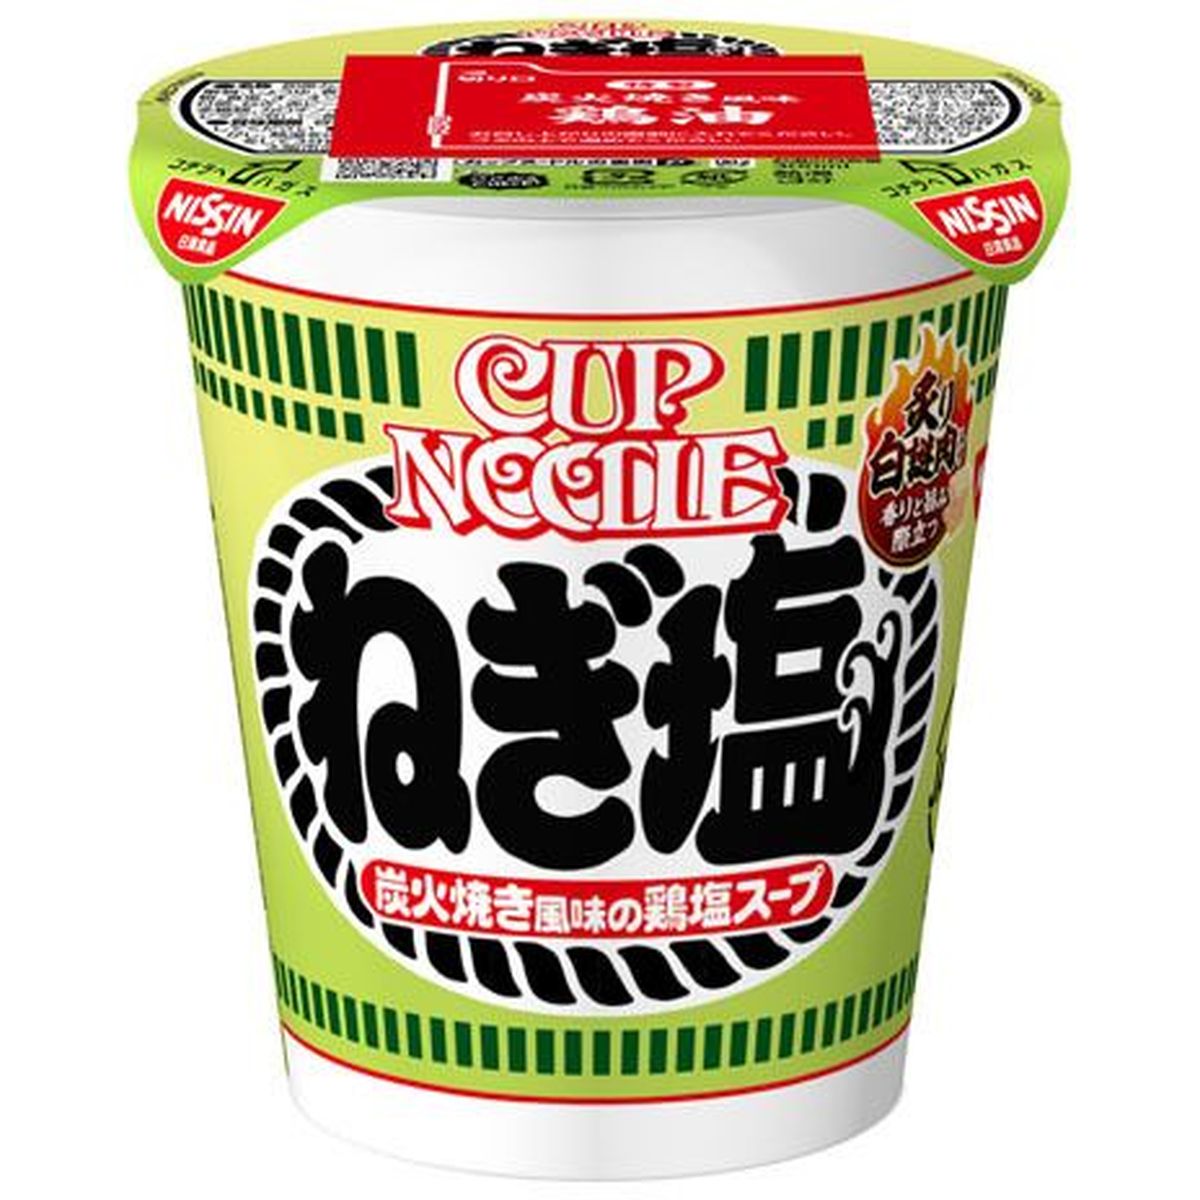 【20個入リ】日清食品 カップヌードル ネギ塩 カップ 76g